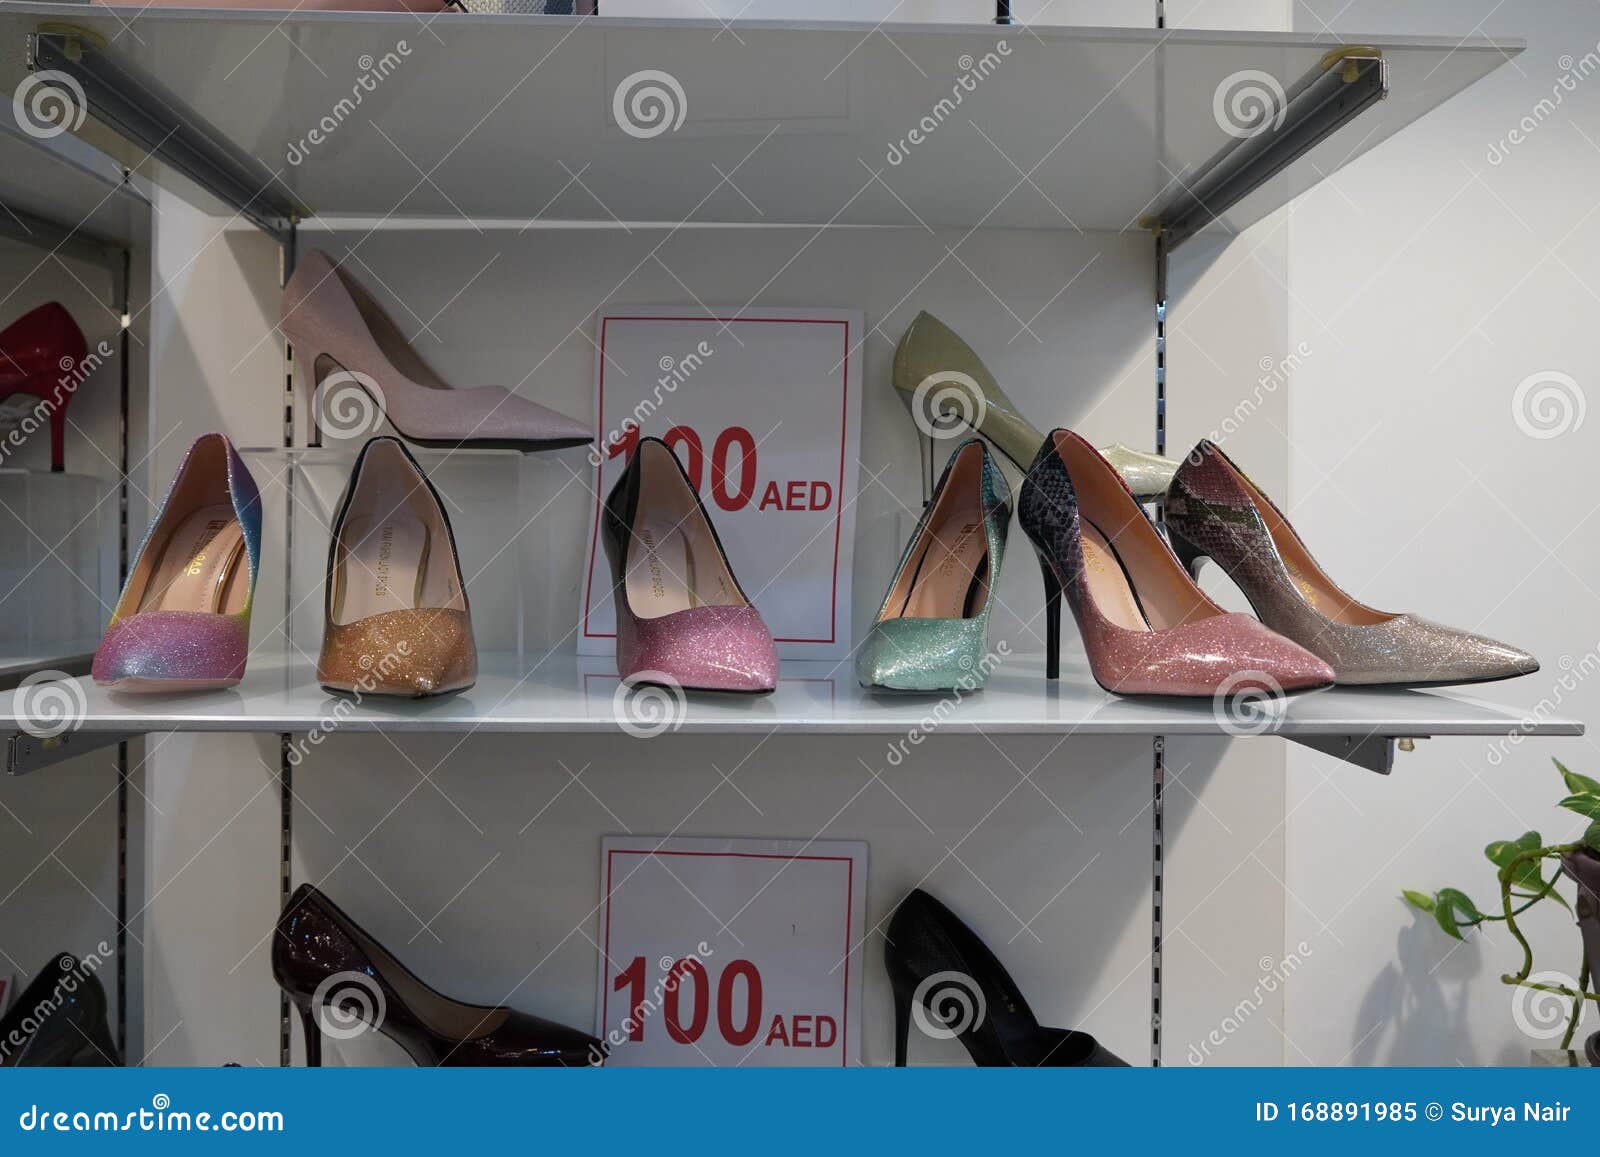 high heel shoe websites